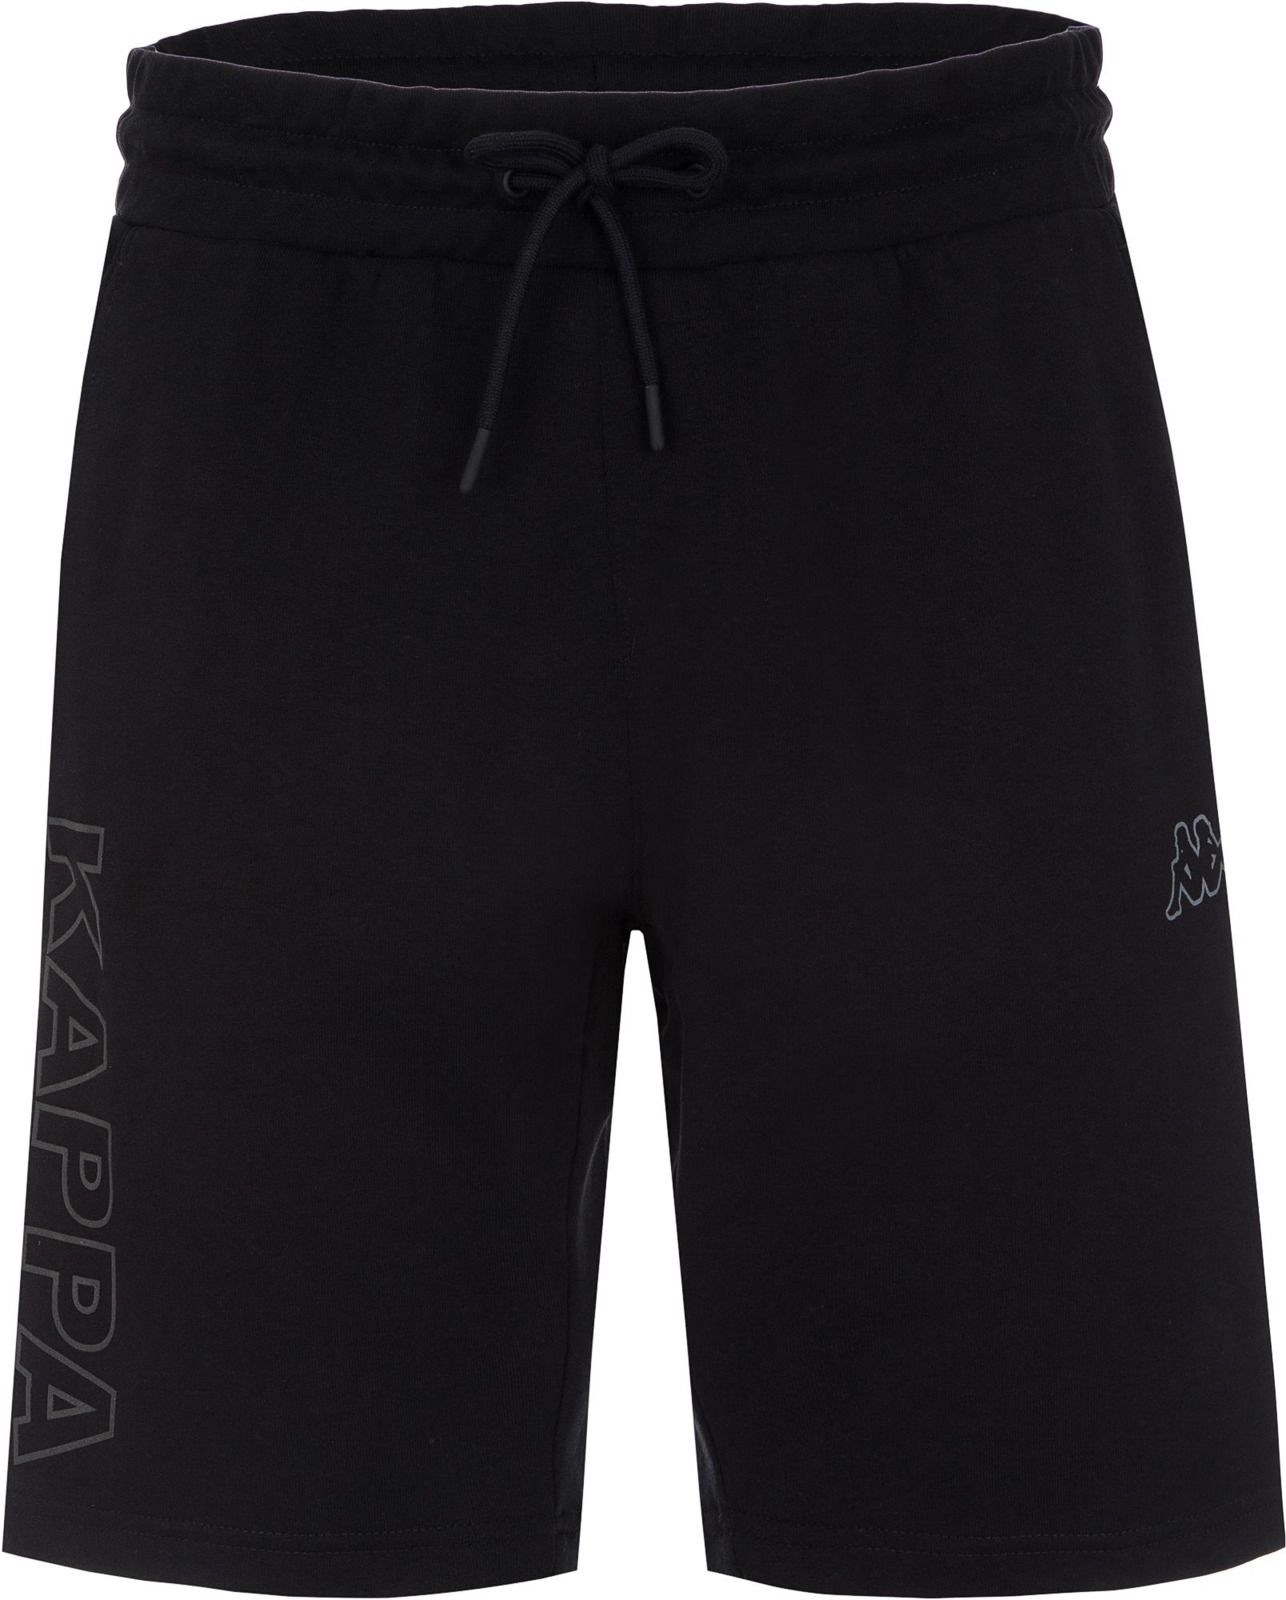   Kappa Men's Shorts, : . 304IDQ0-99.  L (50)